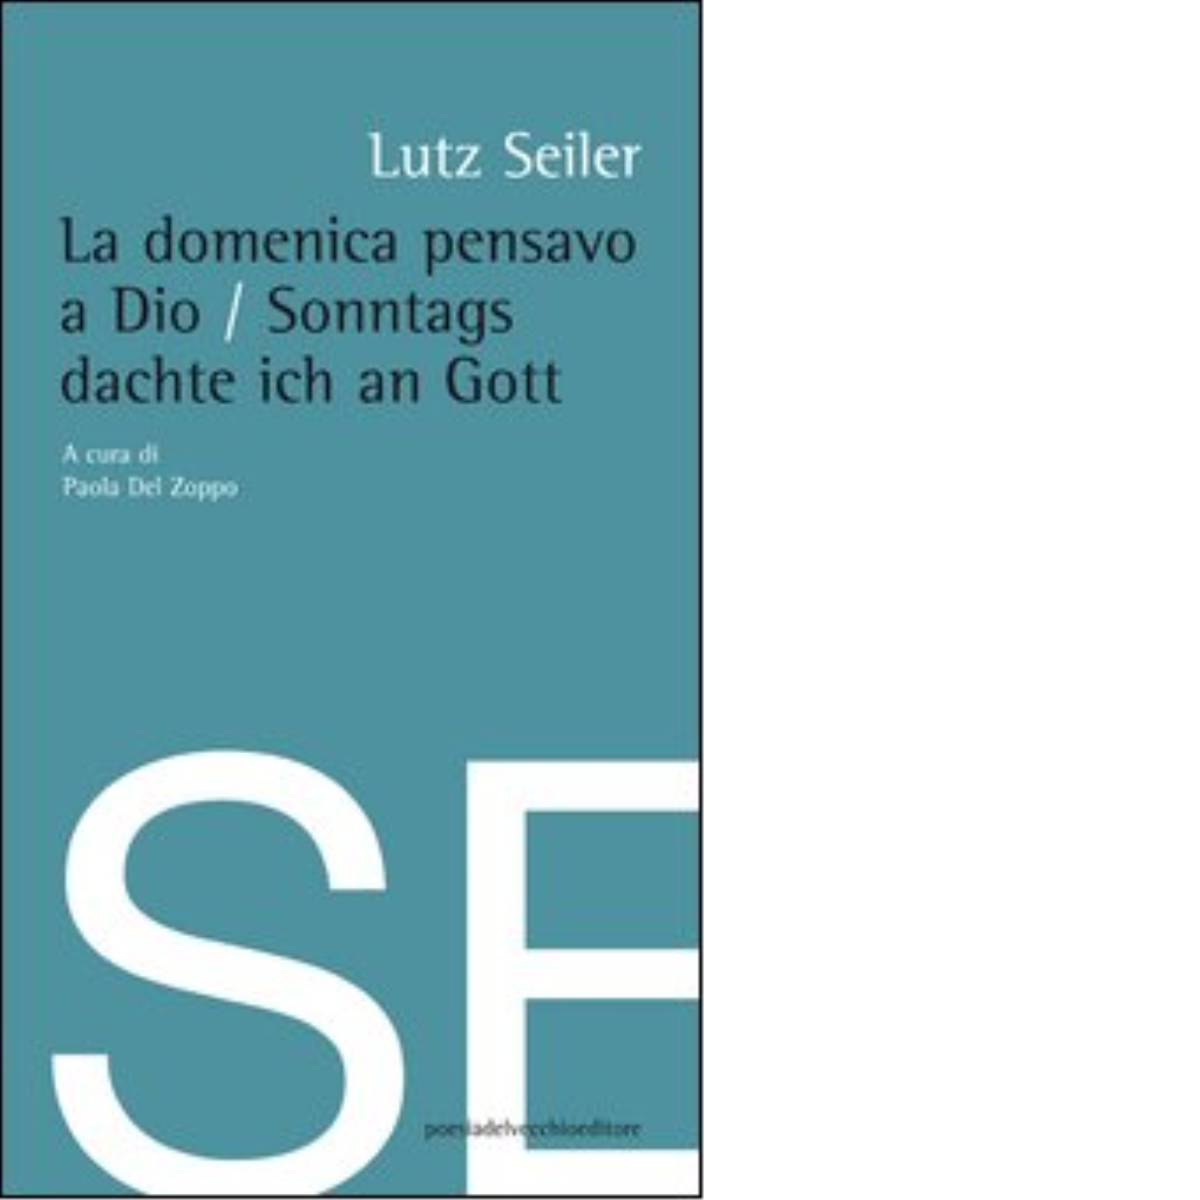 La domenica pensavo a Dio di Lutz Seiler - Del Vecchio editore, 2012 libro usato